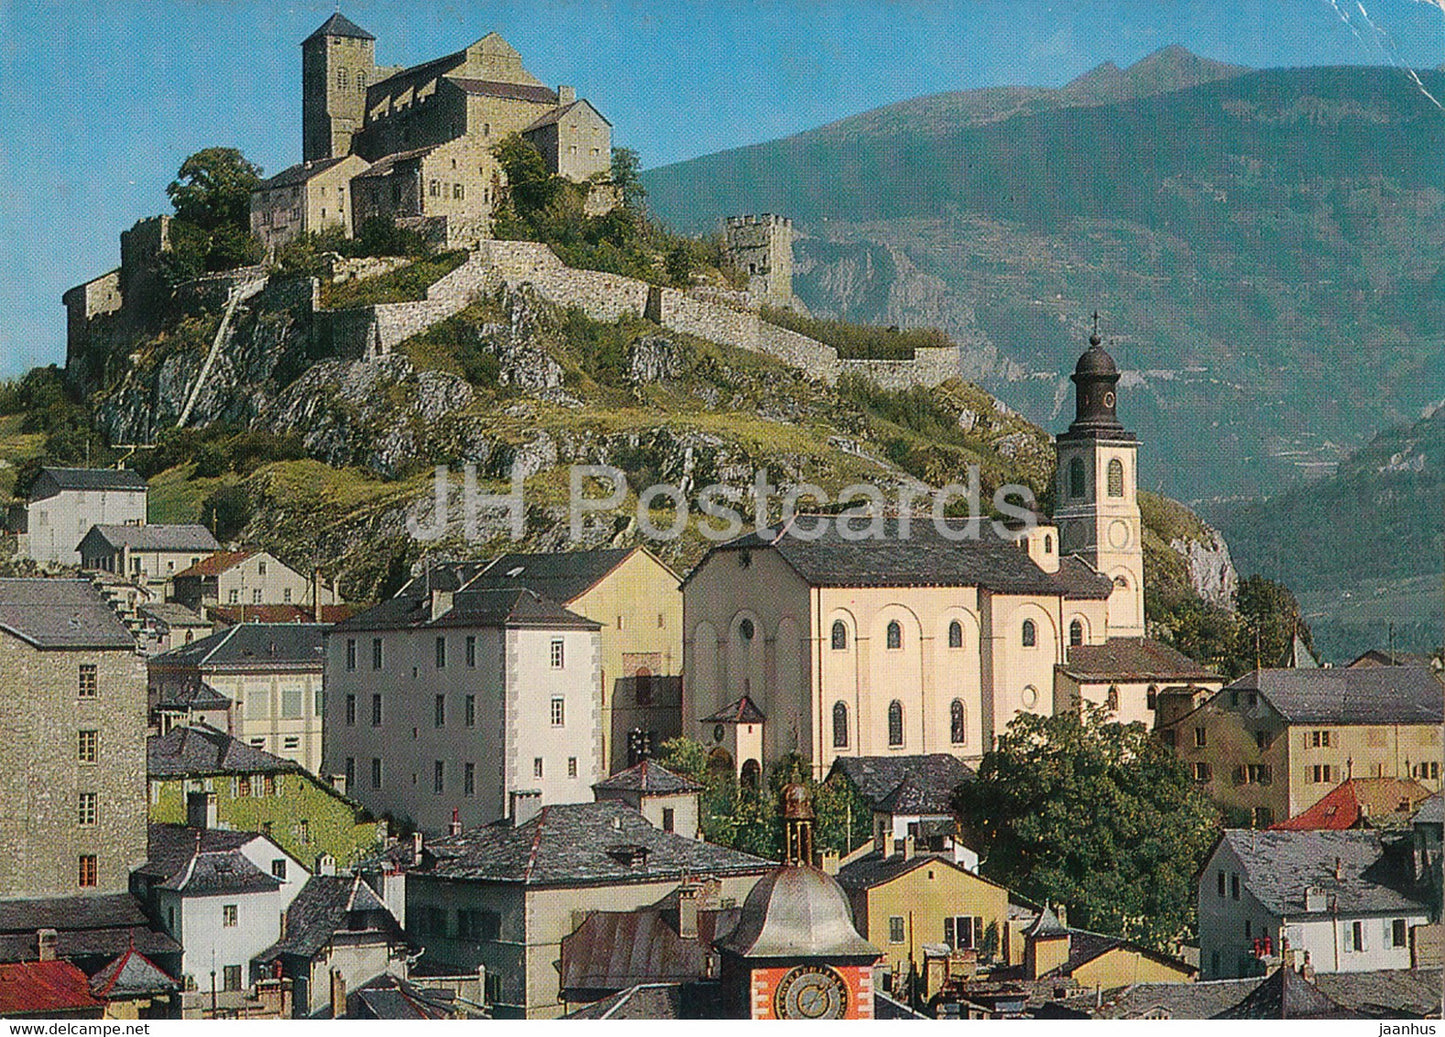 Sion et le Chateau de Valere - castle - 5492 - 1979 - Switzerland - used - JH Postcards